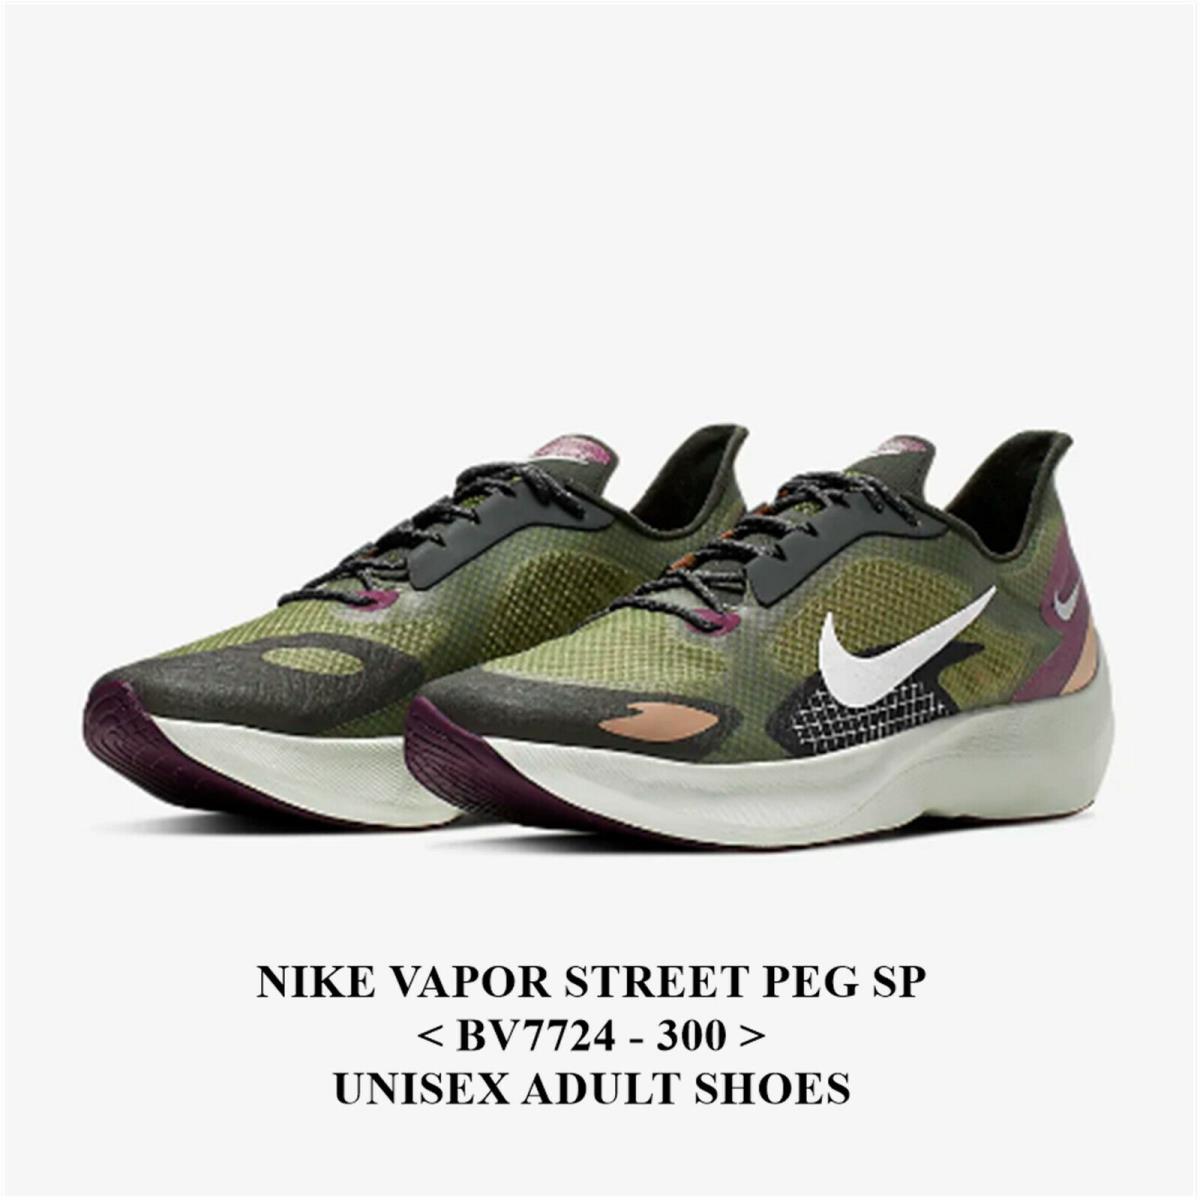 Nike Niki Vapor Street Peg SP <BV7724 - 300>.UNISEX Adult Athletic Shoes with Box